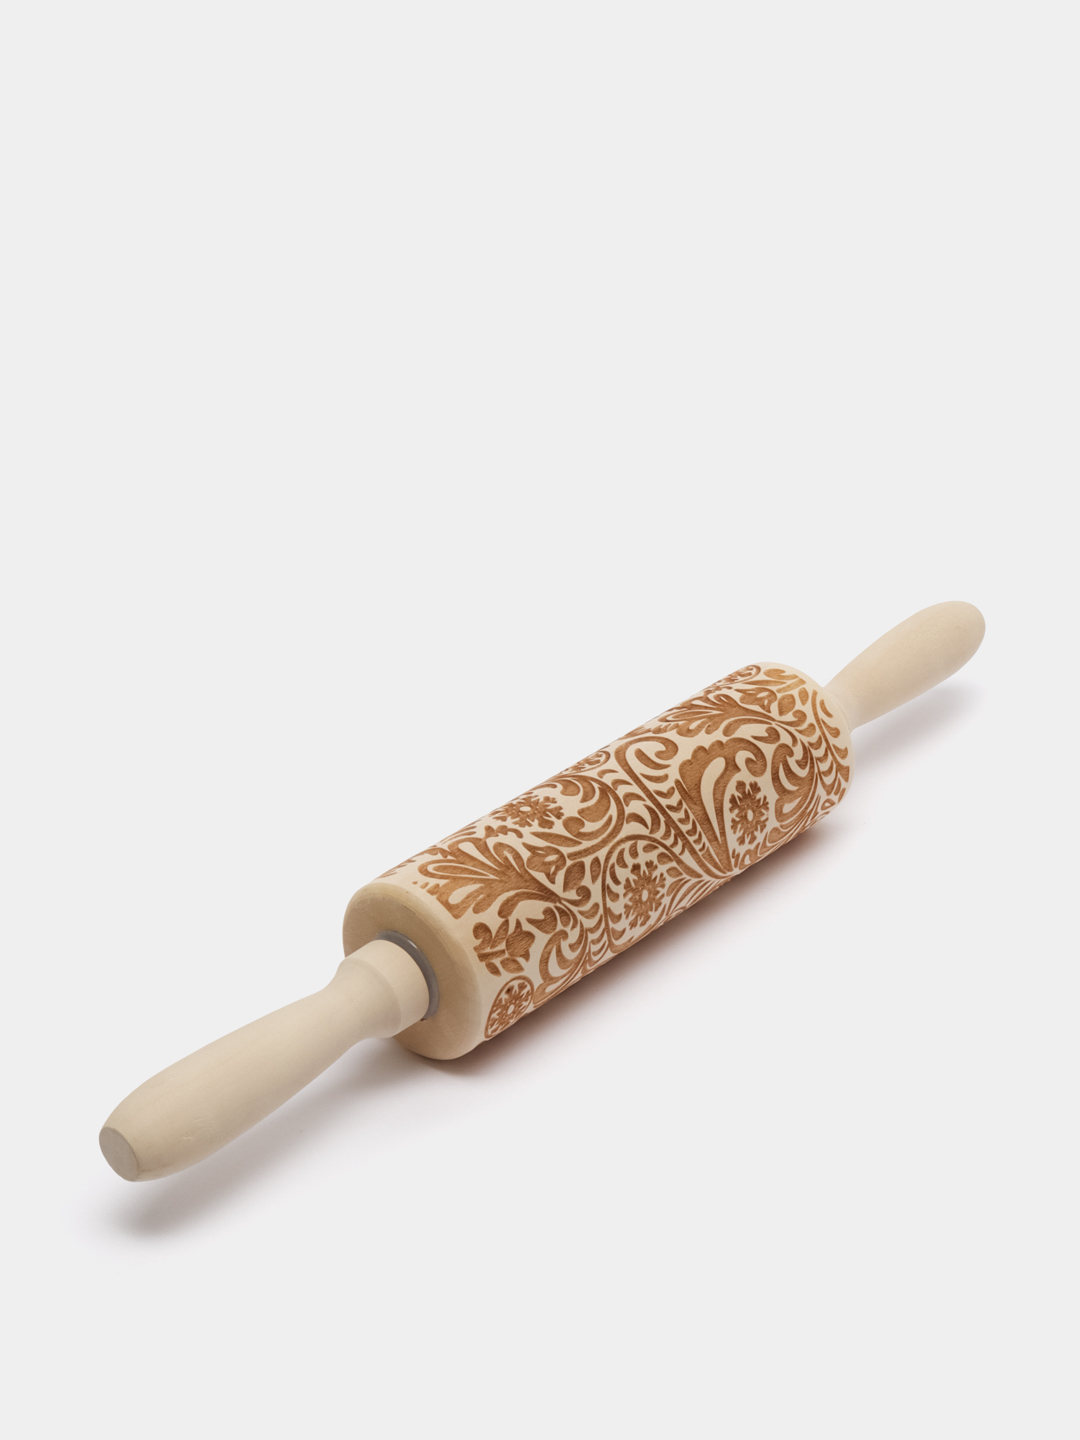 Деревянная фигурная скалка с узором для теста пряников и печенья подарочная